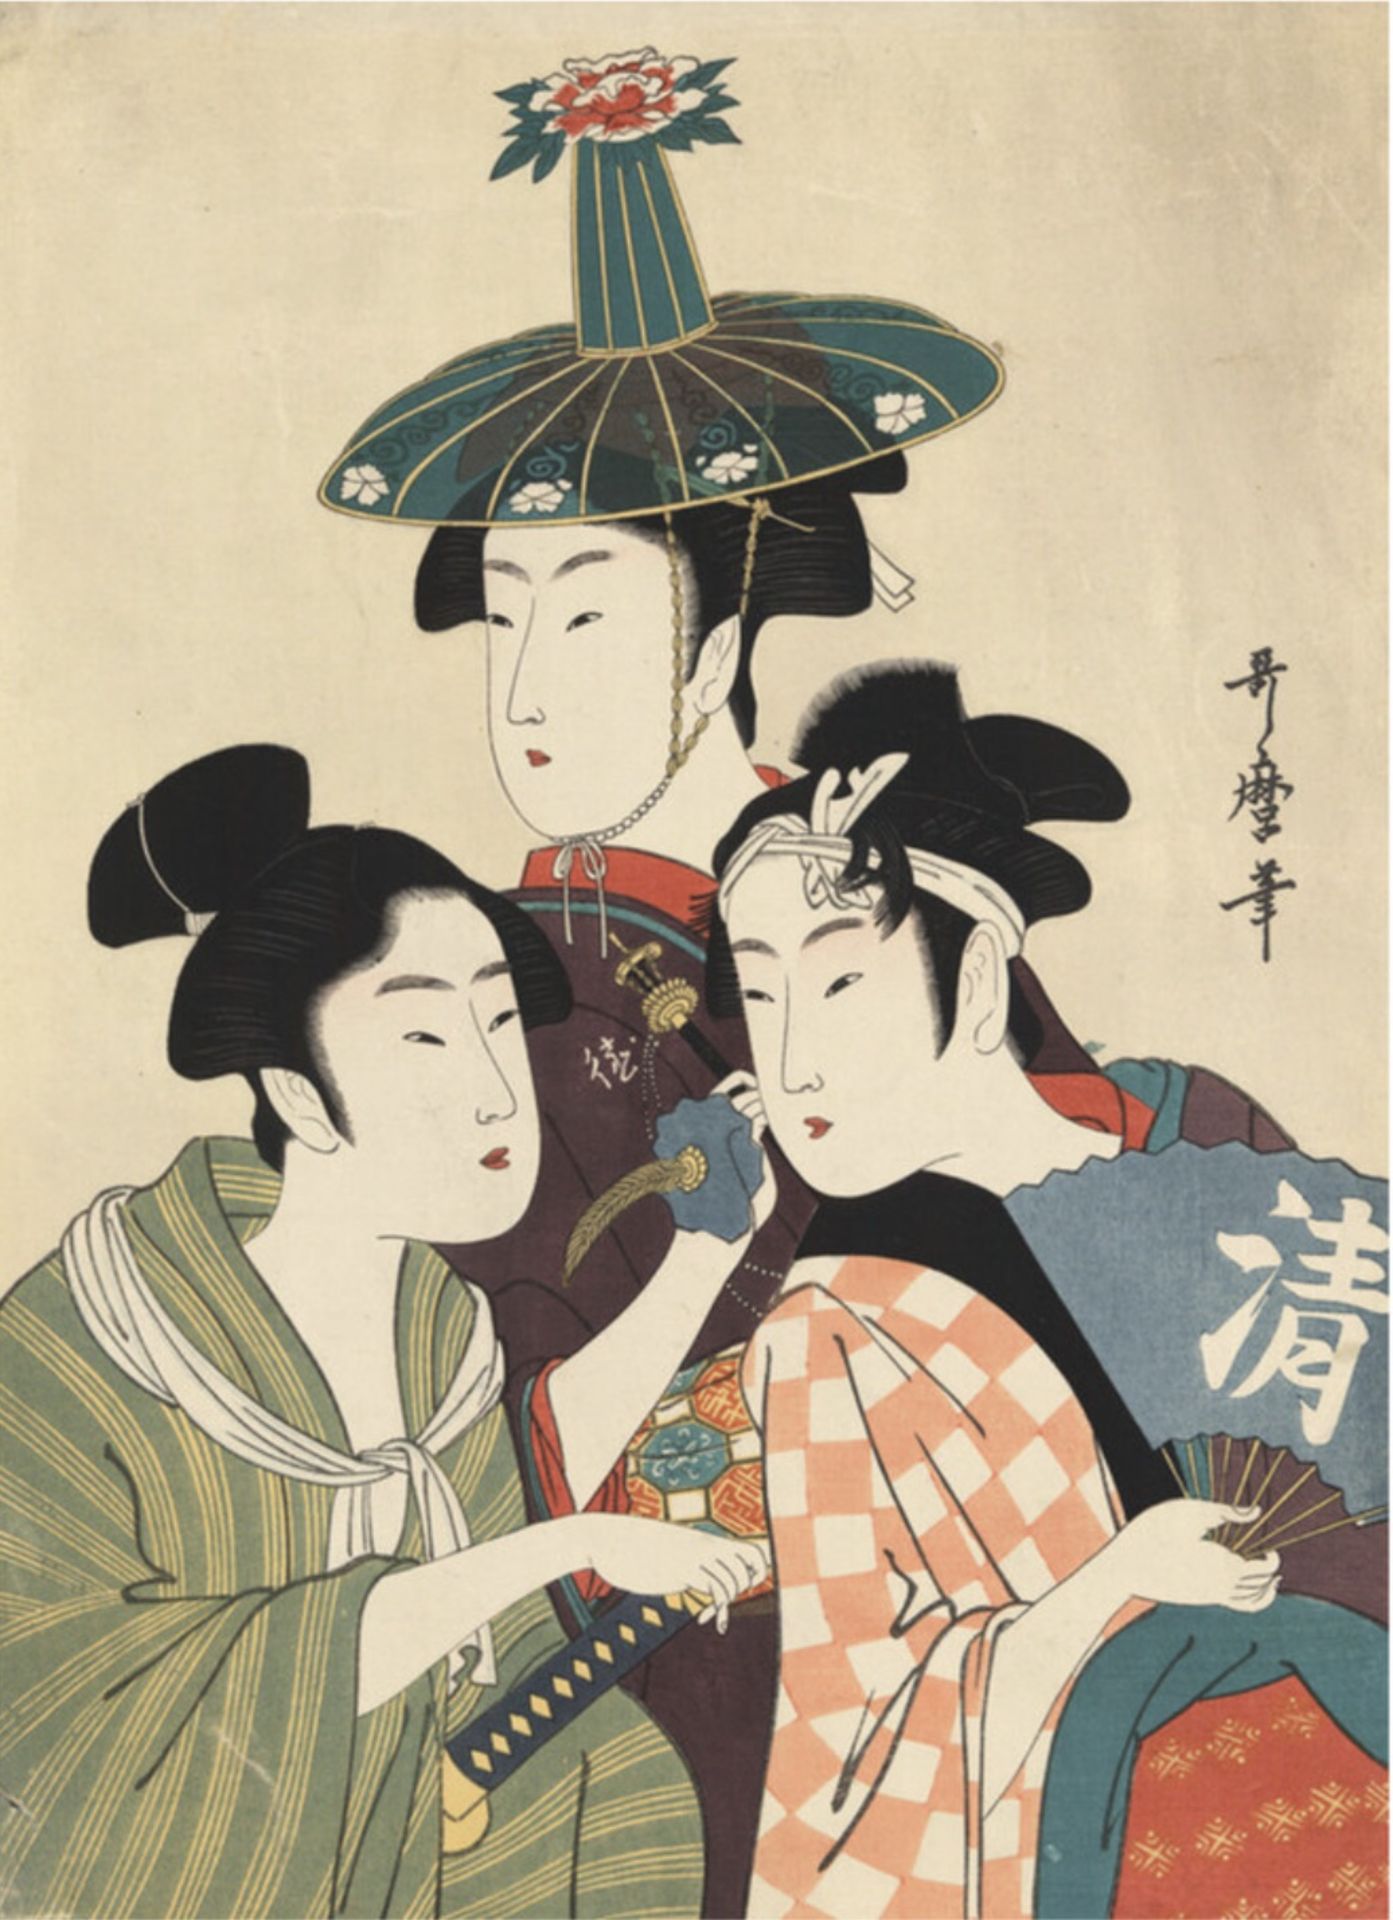 Kitagawa Utamaro "Three Young Men or Women, 1806" Print